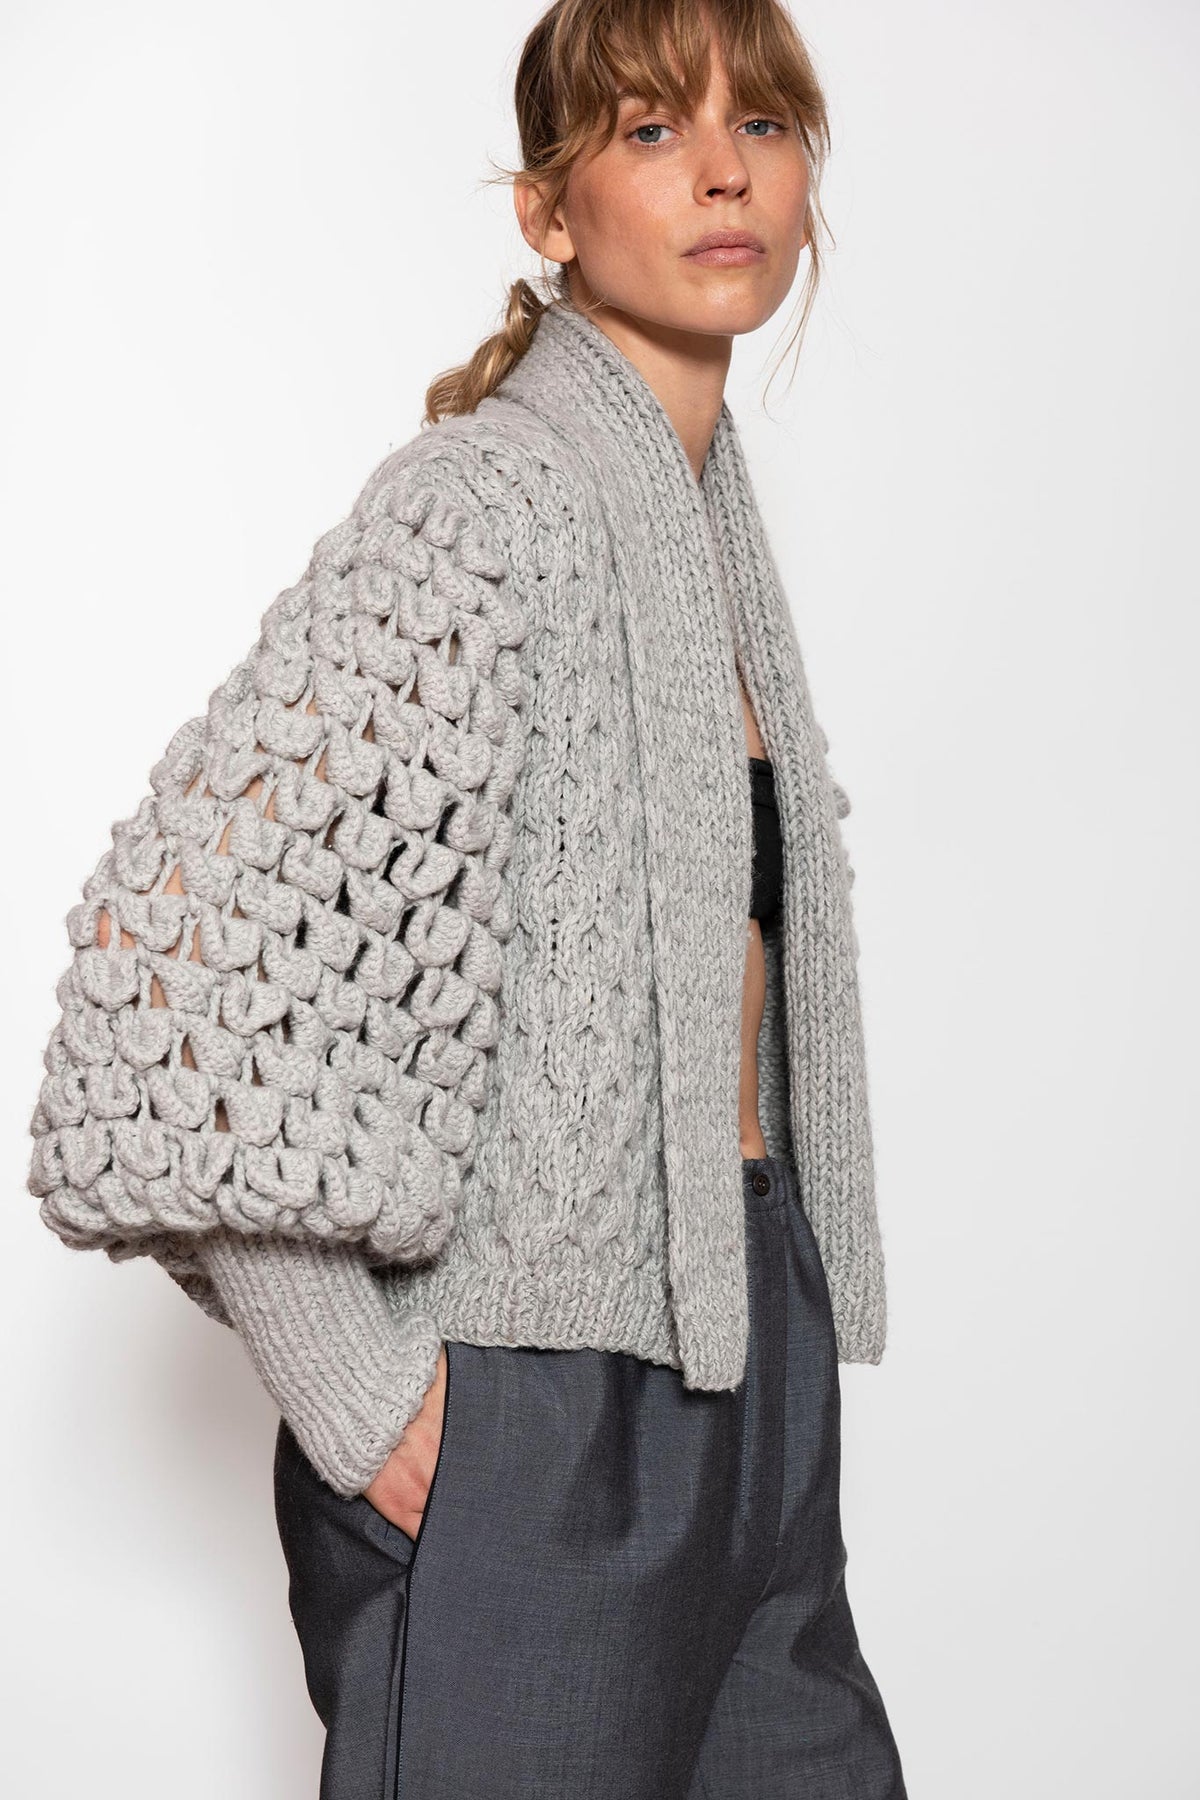 LETANNE | Eva cropped Cashmere luxury handmade knitwear Coat | Letanne